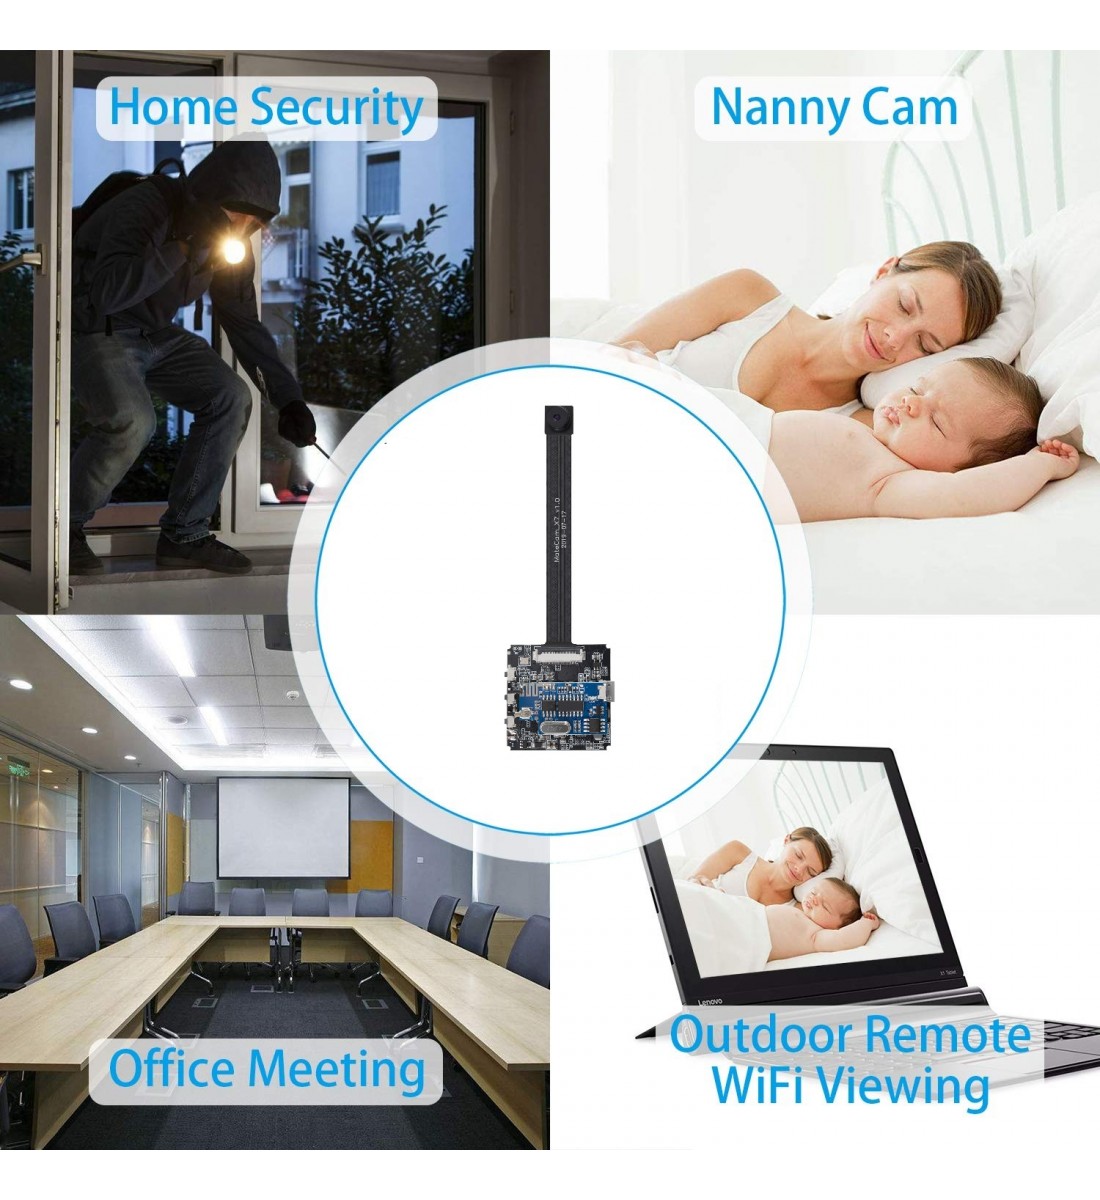 Mini cámara espía WiFi cámara oculta visión nocturna 4K HD cámara espía  para seguridad en el hogar fácil de configurar cámara inalámbrica interior  más